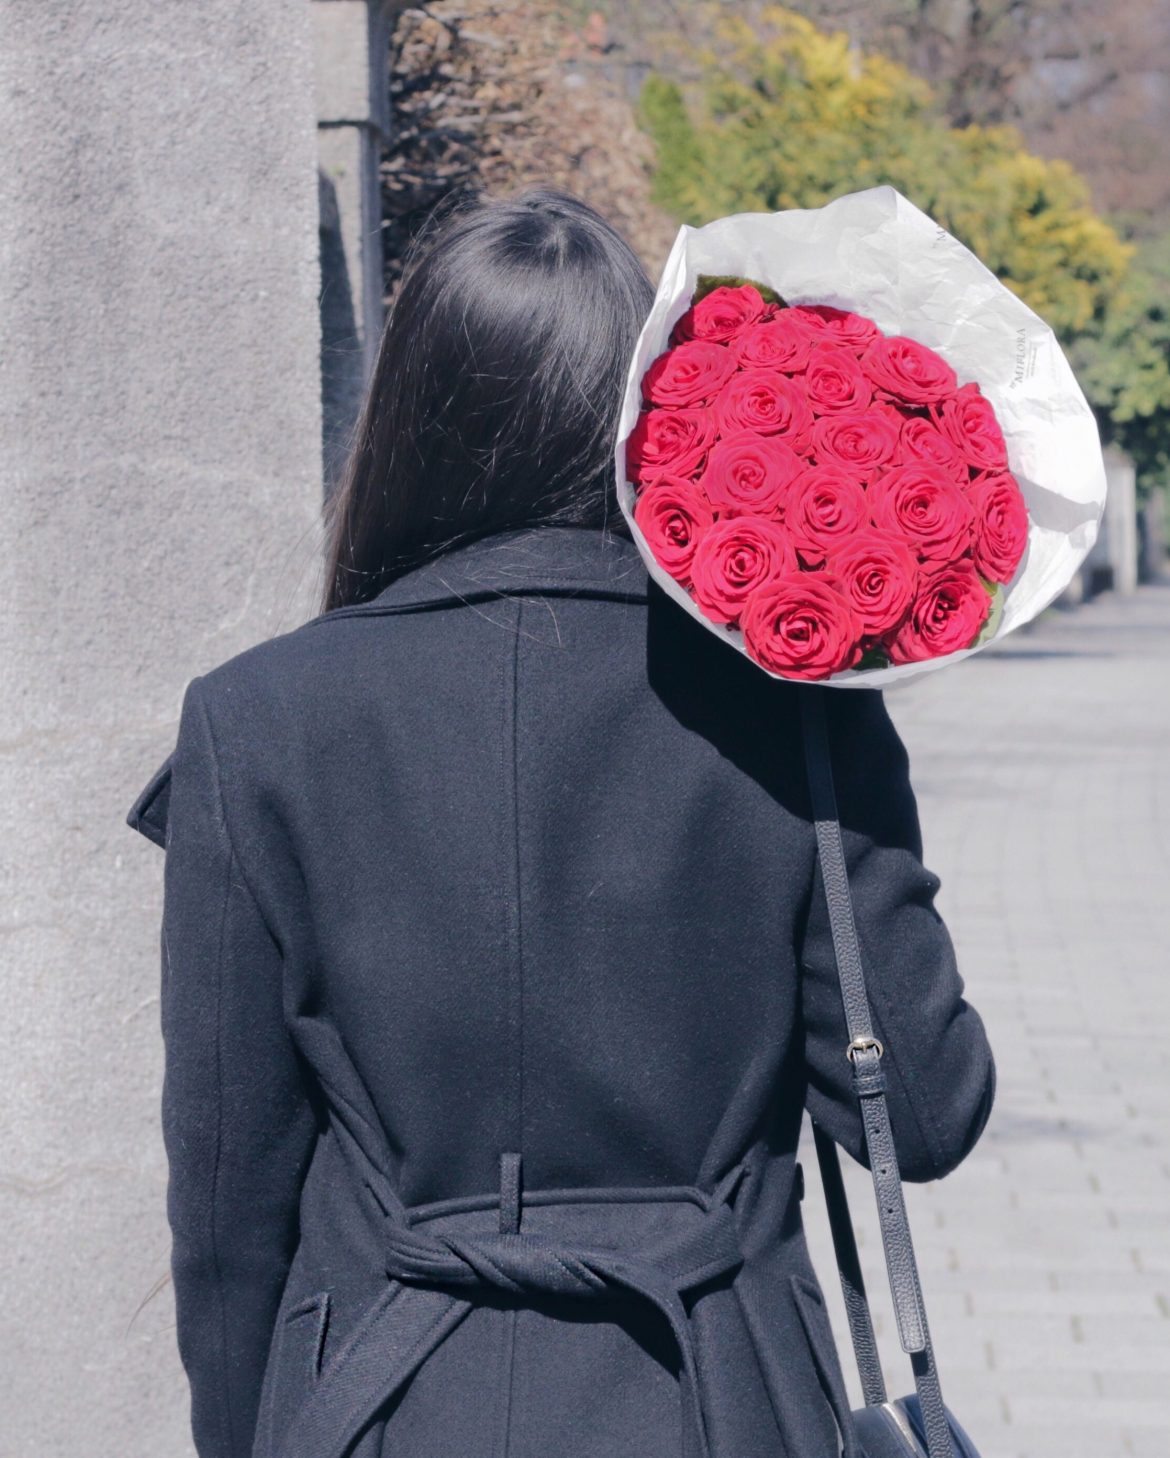 3 Dia das mães - Bouquet de rosas vermelhas - Kezia Happuck